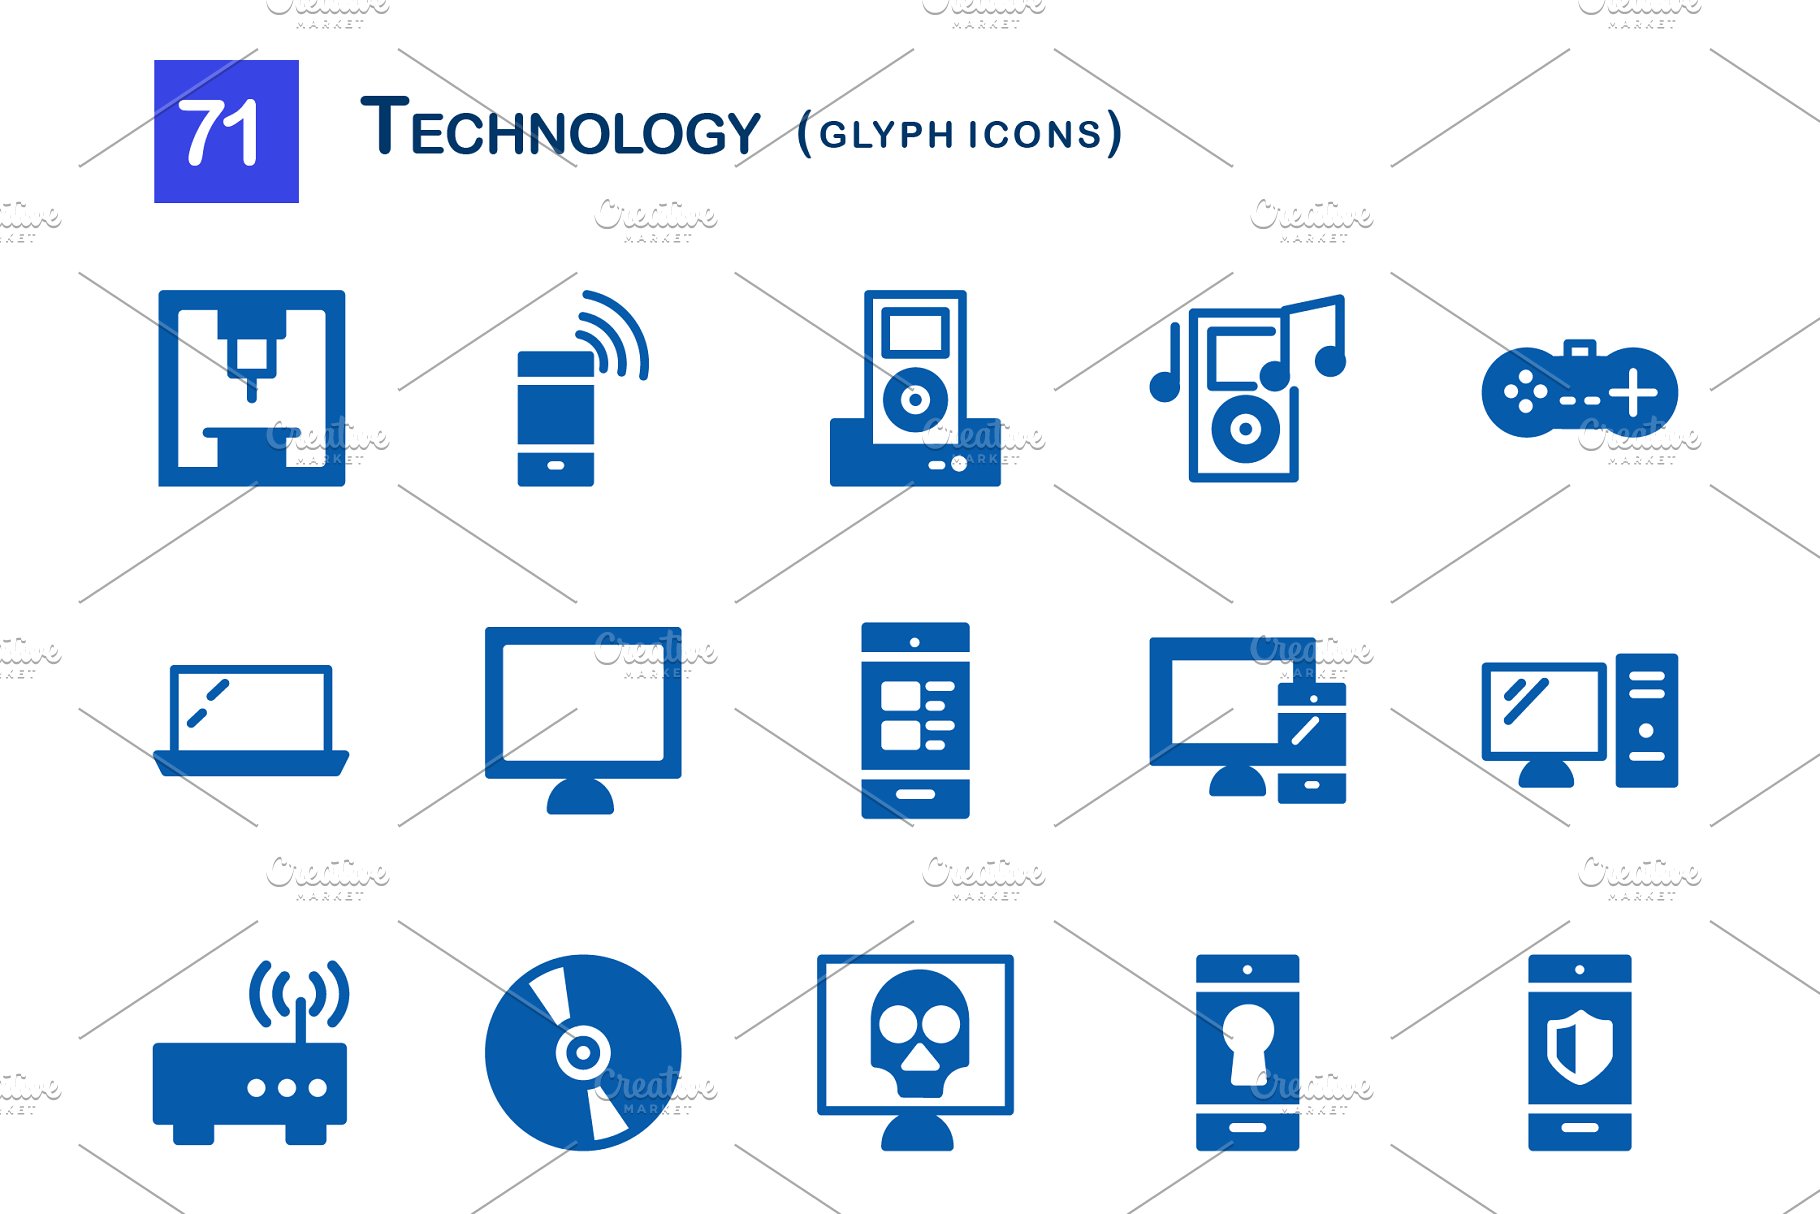 71个科技主题象形写意文字图标 71 Technology Glyph Icons插图(2)